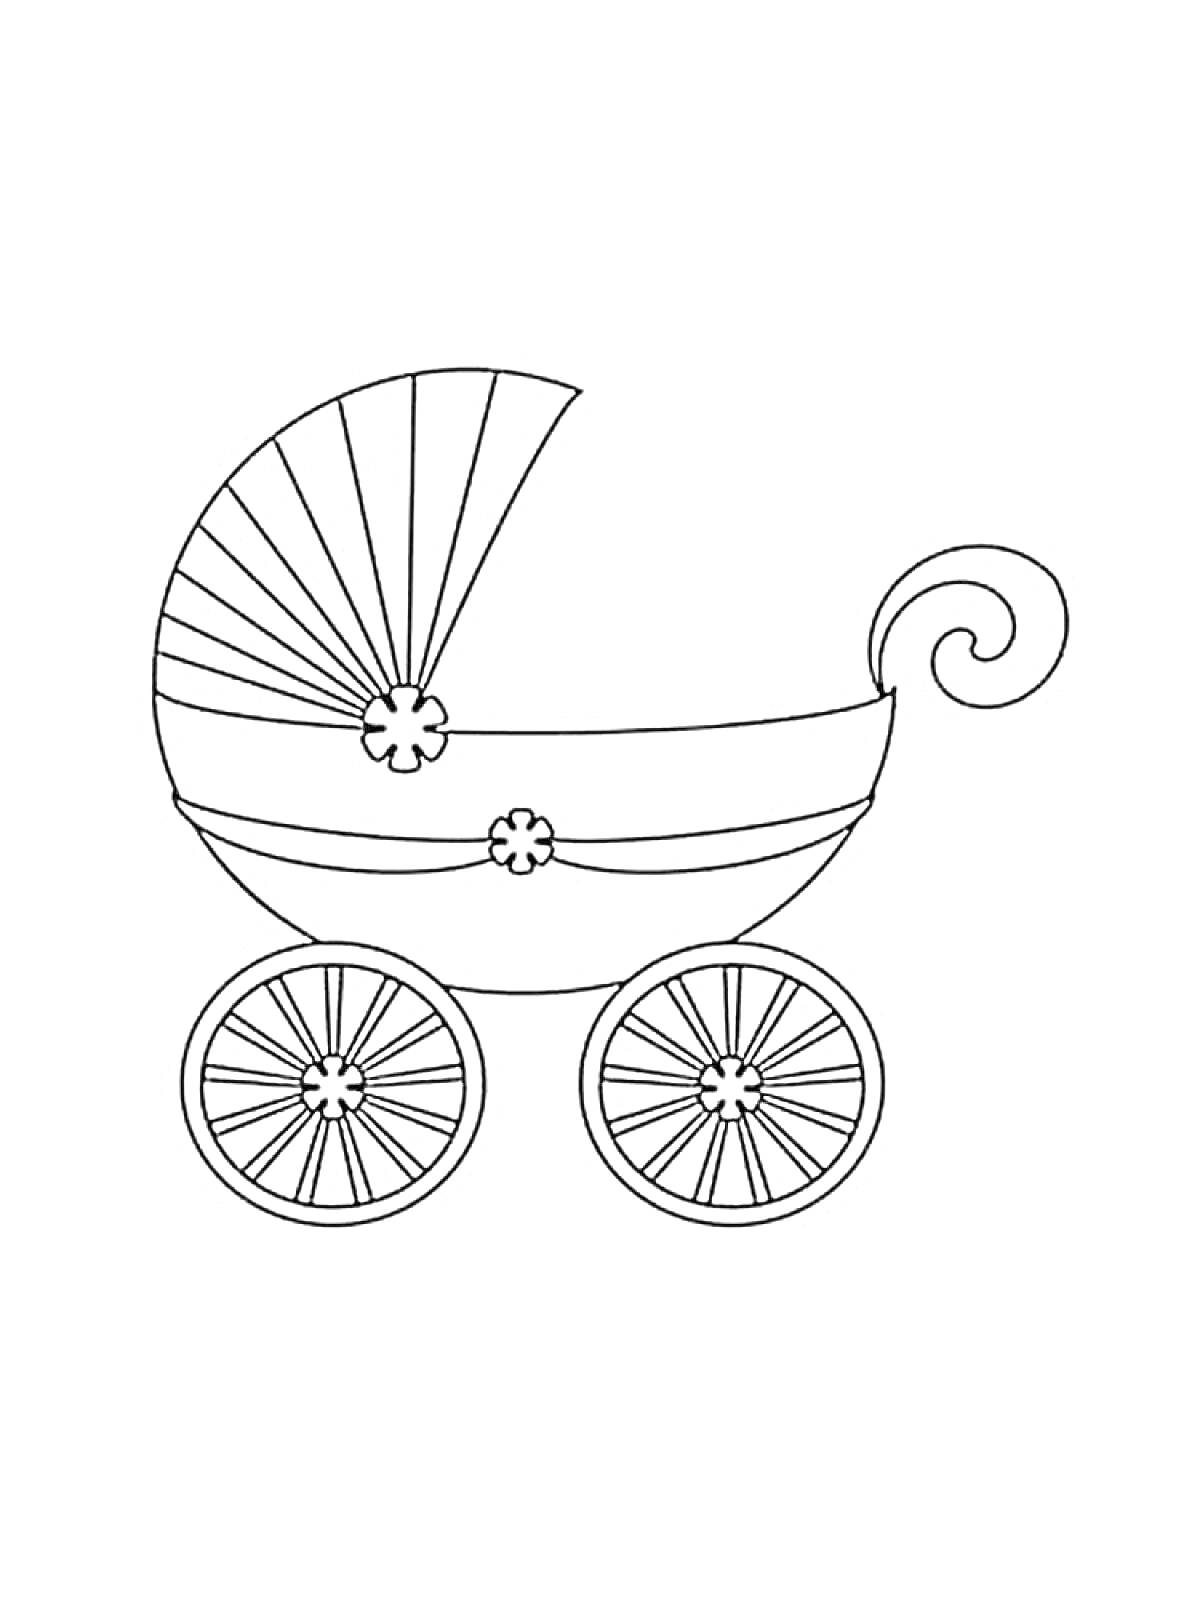 Детская коляска с дугами, цветами на корпусе и четырьмя колесами